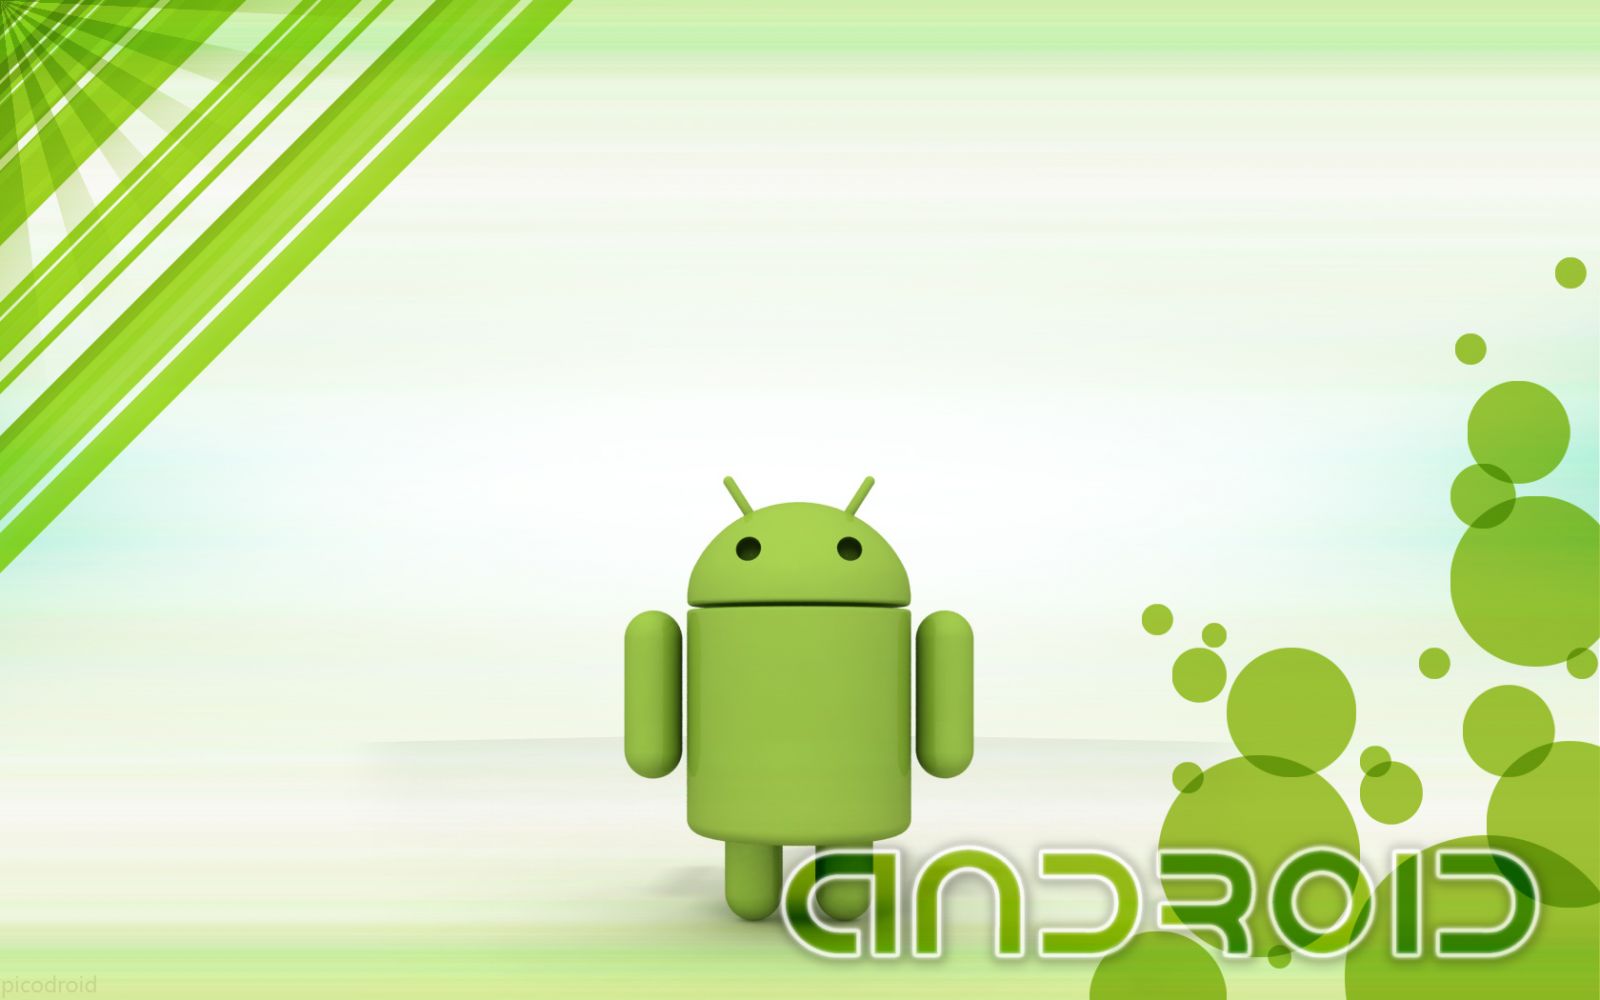 công ty engma chuyên nhận lập trình android tại tp hcm